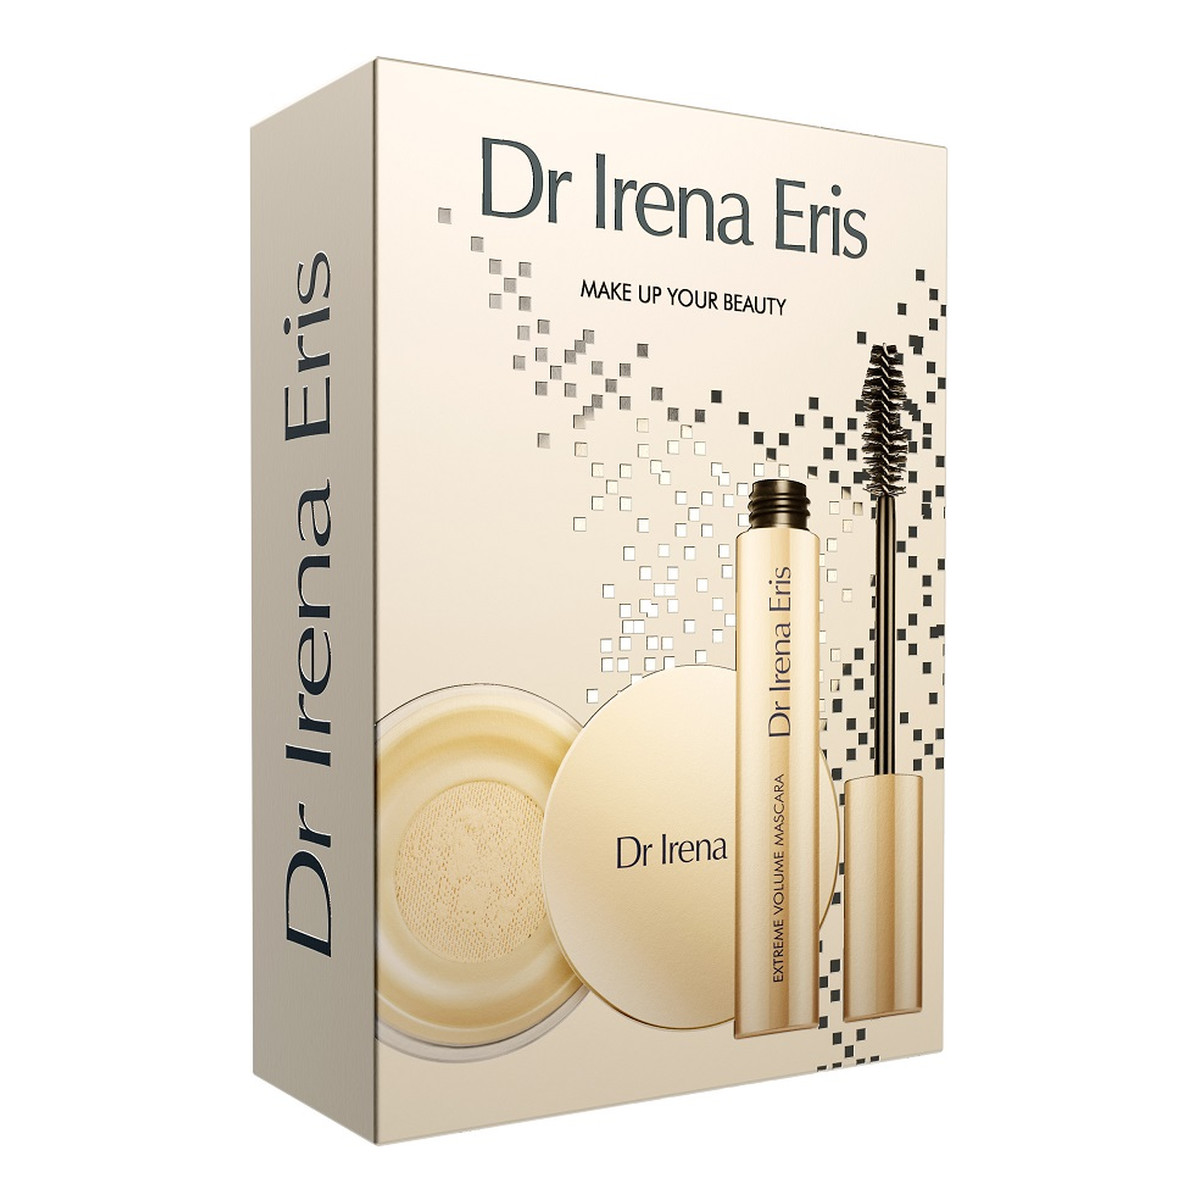 Dr Irena Eris Make Up Your Beauty Zestaw matt & blur make-up fixer puder utrwalający makijaż 10g + extreme volume mascara pogrubiający tusz do rzęs 9g